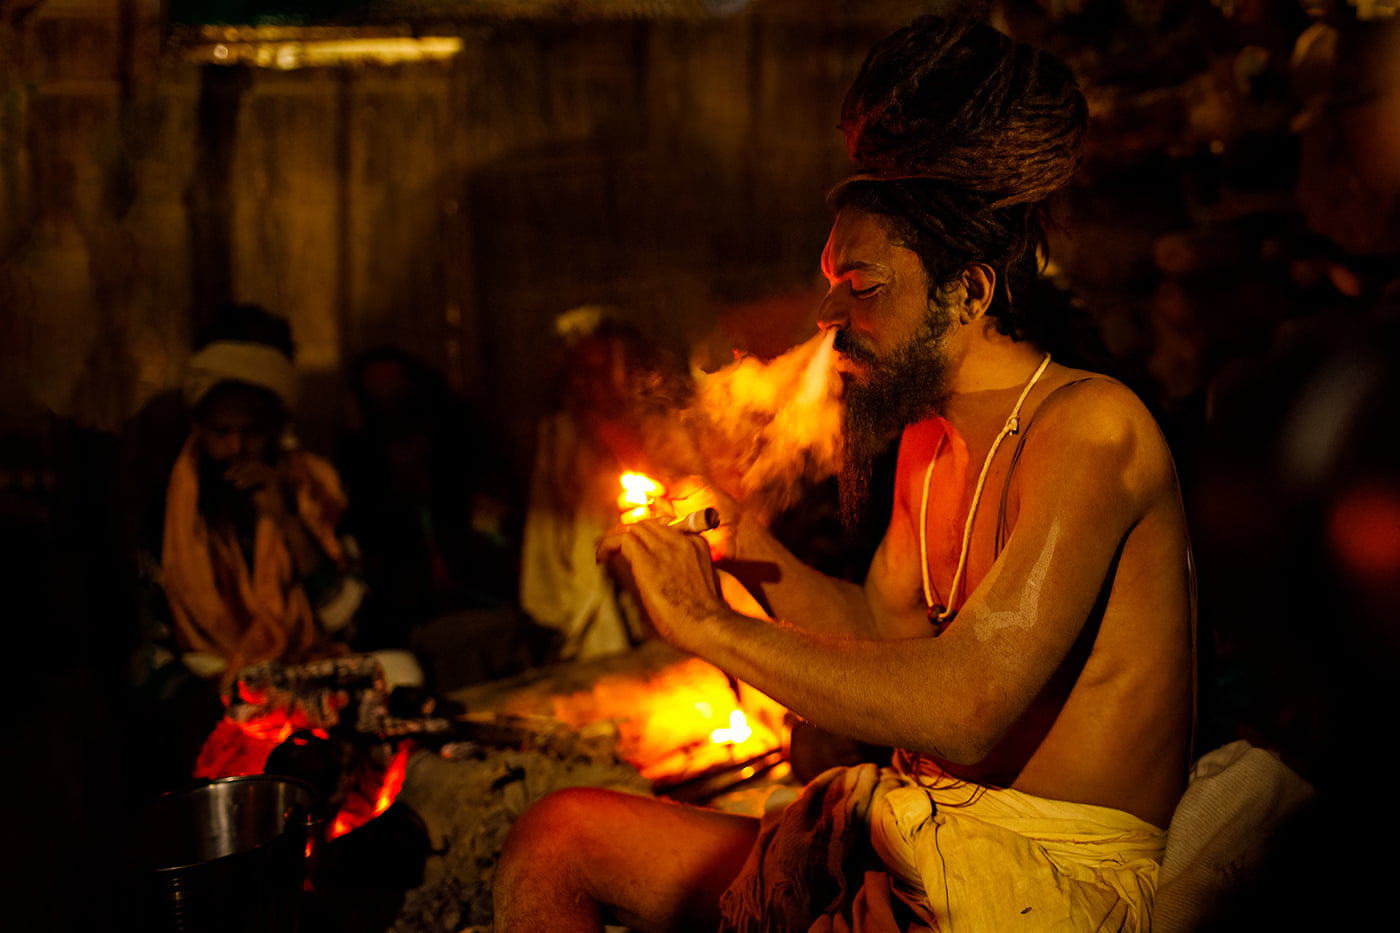 A Naga Sadhu smokes a chillum at the Kumbh Mela in Allahabad, India.